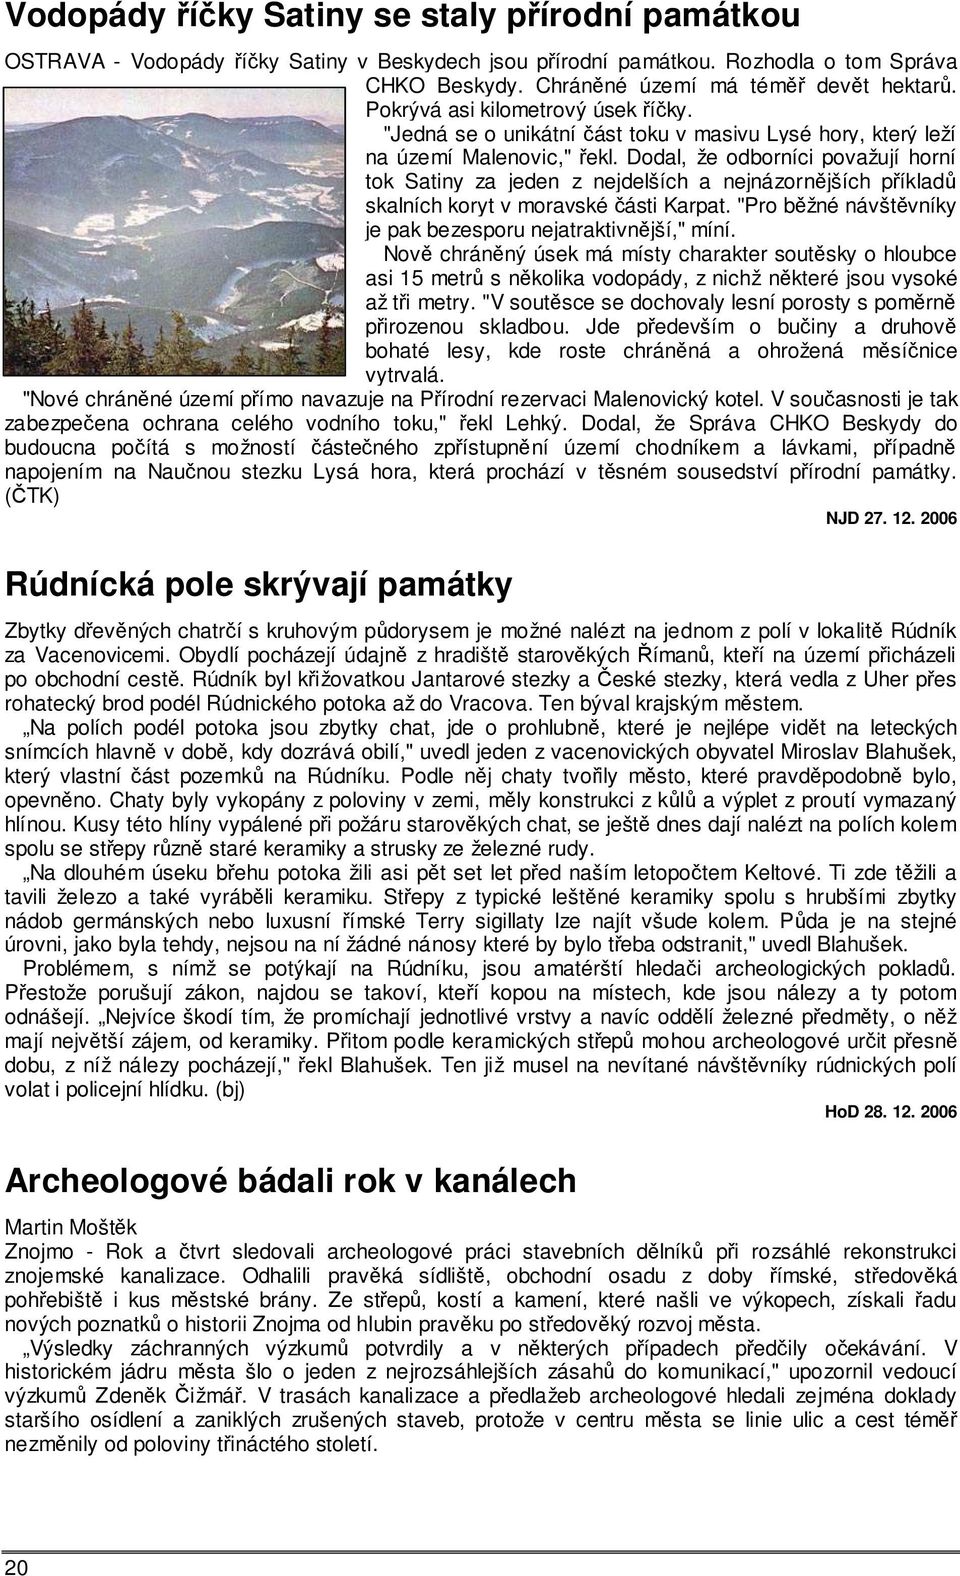 Dodal, že odborníci považují horní tok Satiny za jeden z nejdelších a nejnázornějších příkladů skalních koryt v moravské části Karpat. "Pro běžné návštěvníky je pak bezesporu nejatraktivnější," míní.